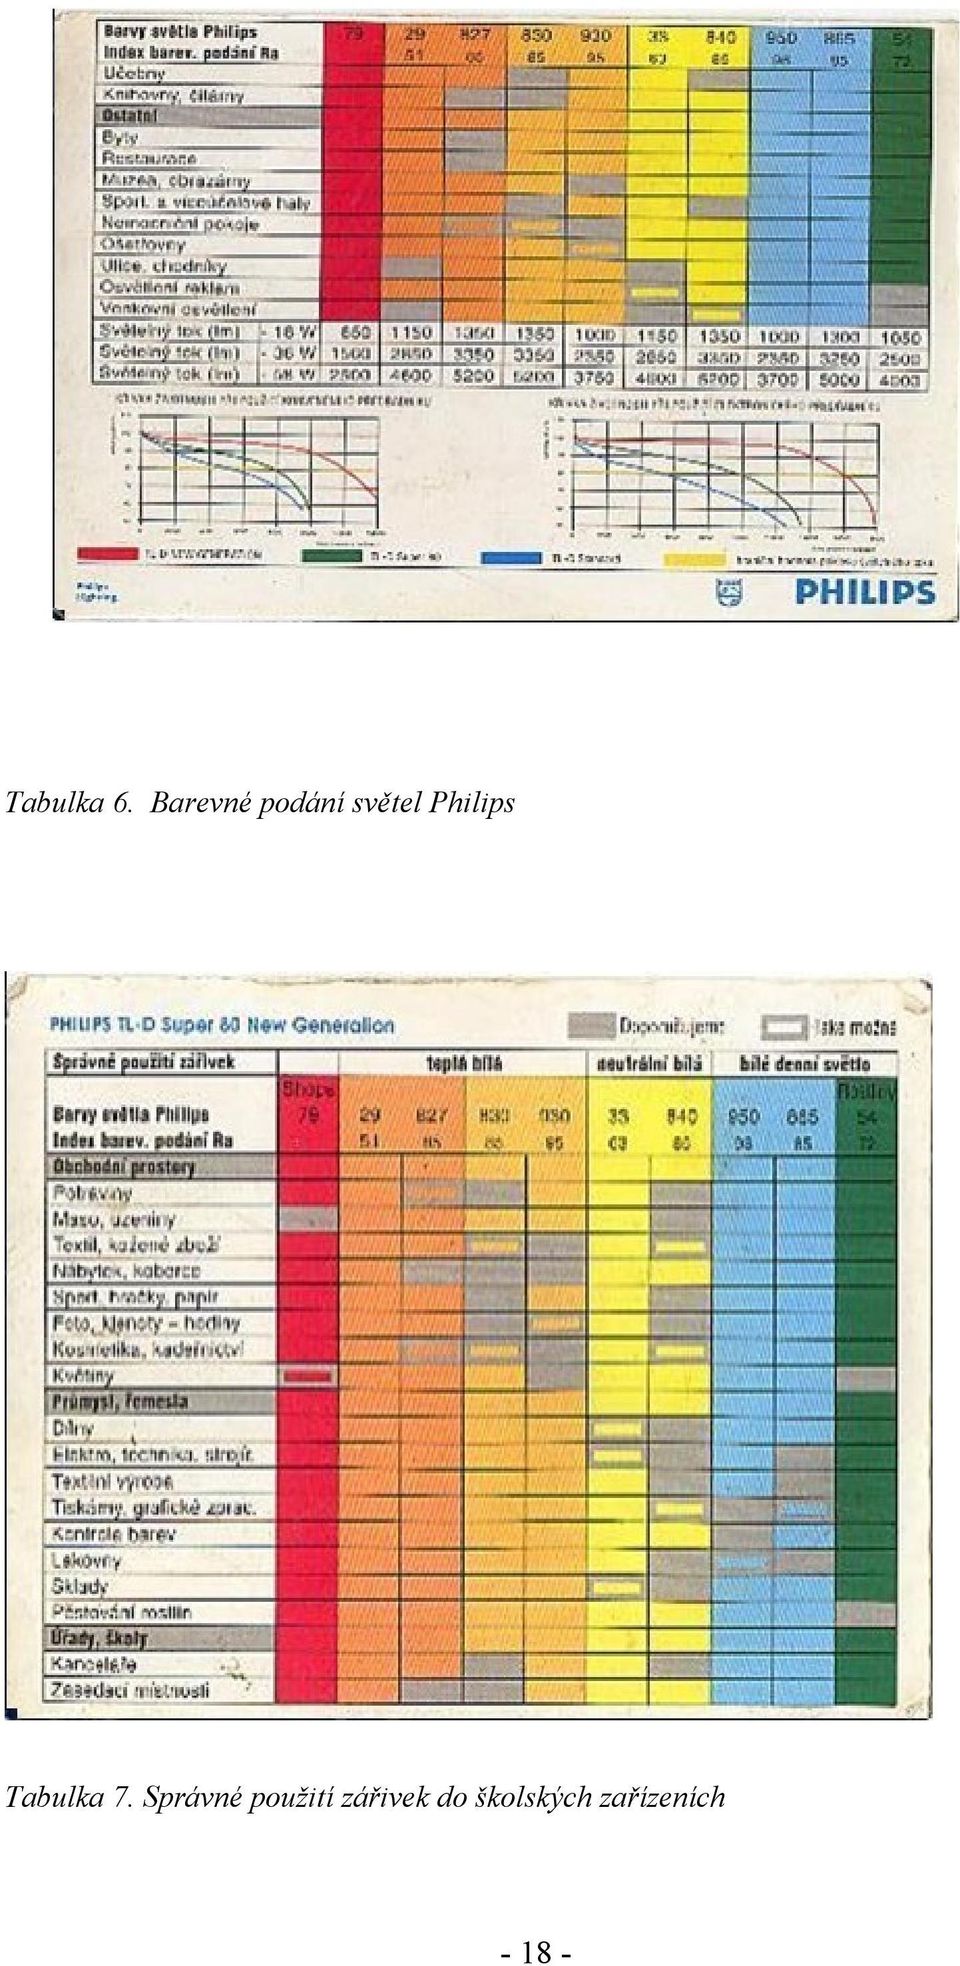 Philips Tabulka 7.